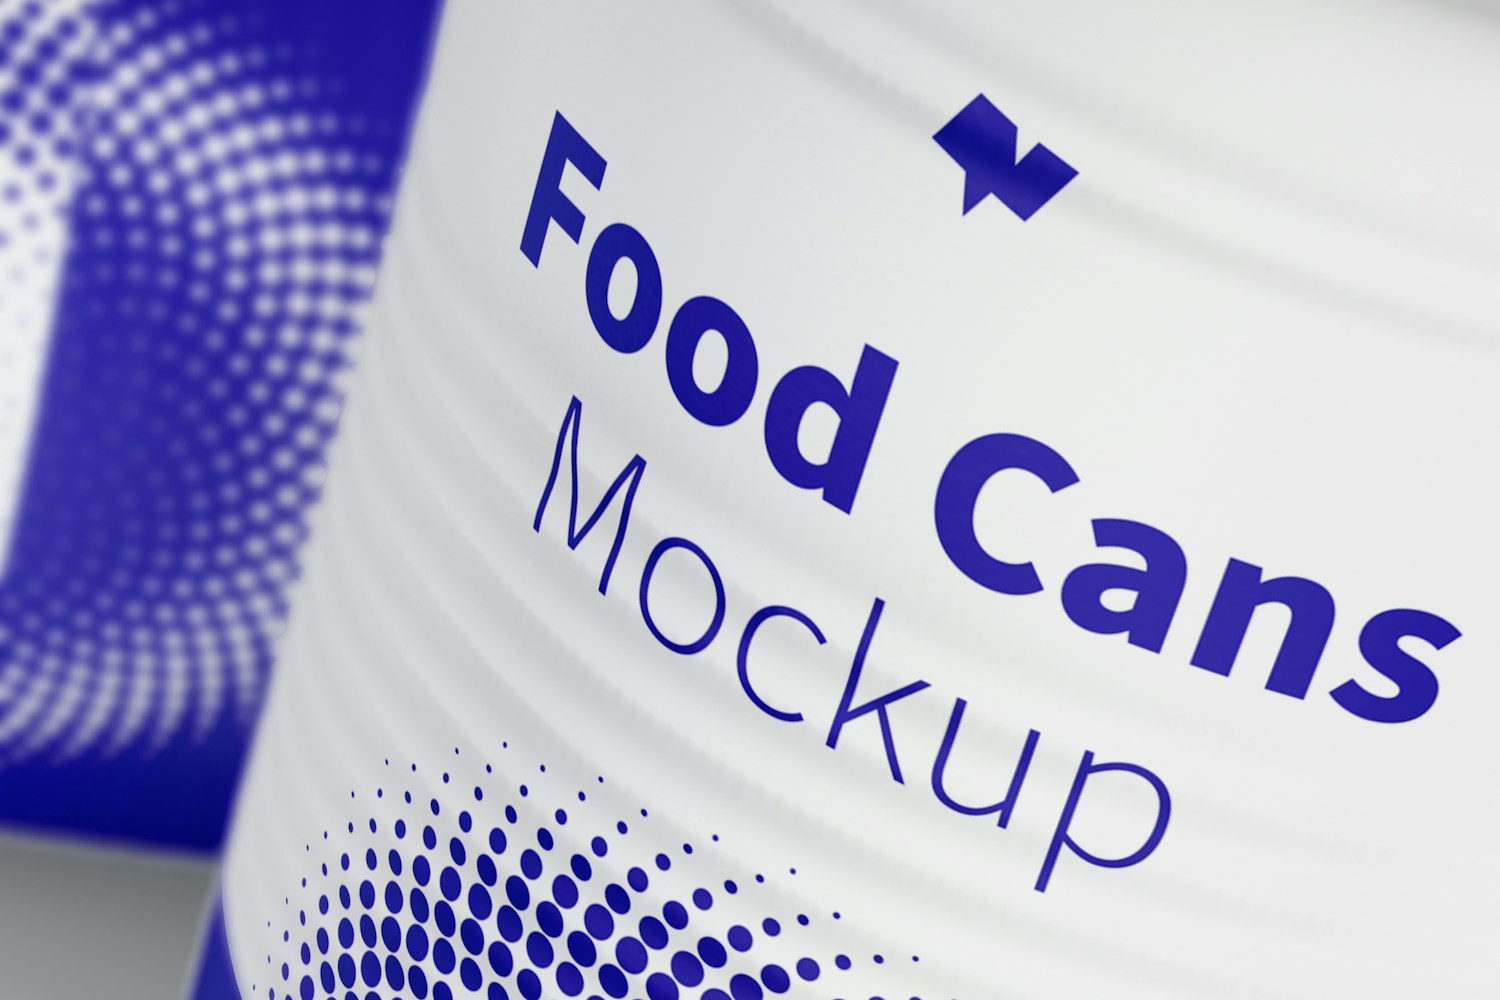 580g Food Cans Mockup, Close-Up